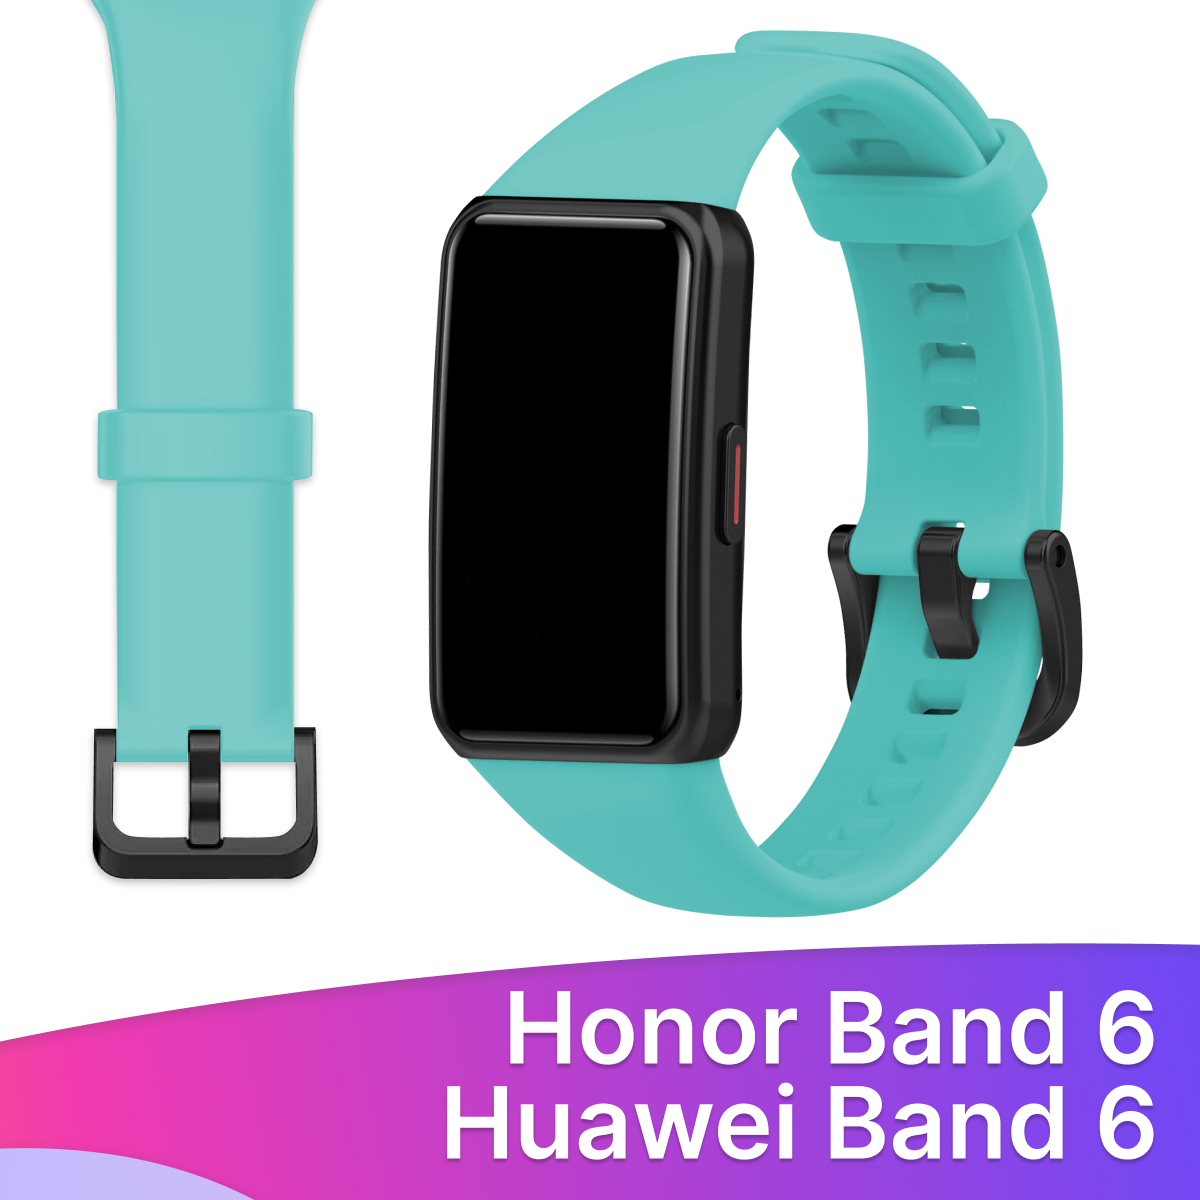 Силиконовый ремешок для Honor Band 6 и Huawei Band 6 / Сменный браслет для умных смарт часов / Фитнес трекера Хонор и Хуавей Бэнд 6, Бирюзовый